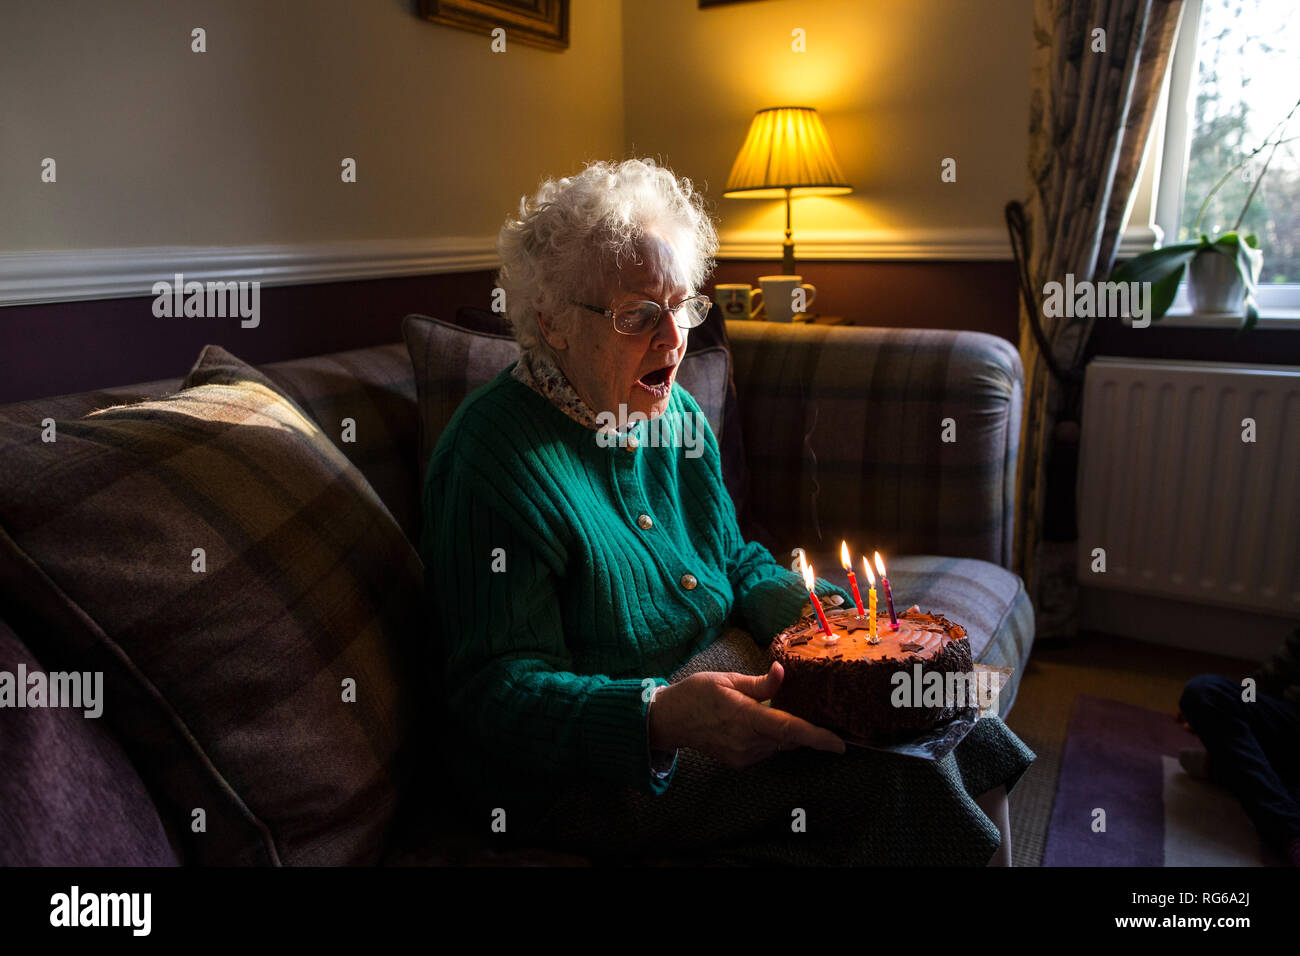 Vieille Femme célèbre son anniversaire avec un gâteau tout en soufflant les bougies, Angleterre, Royaume-Uni Banque D'Images